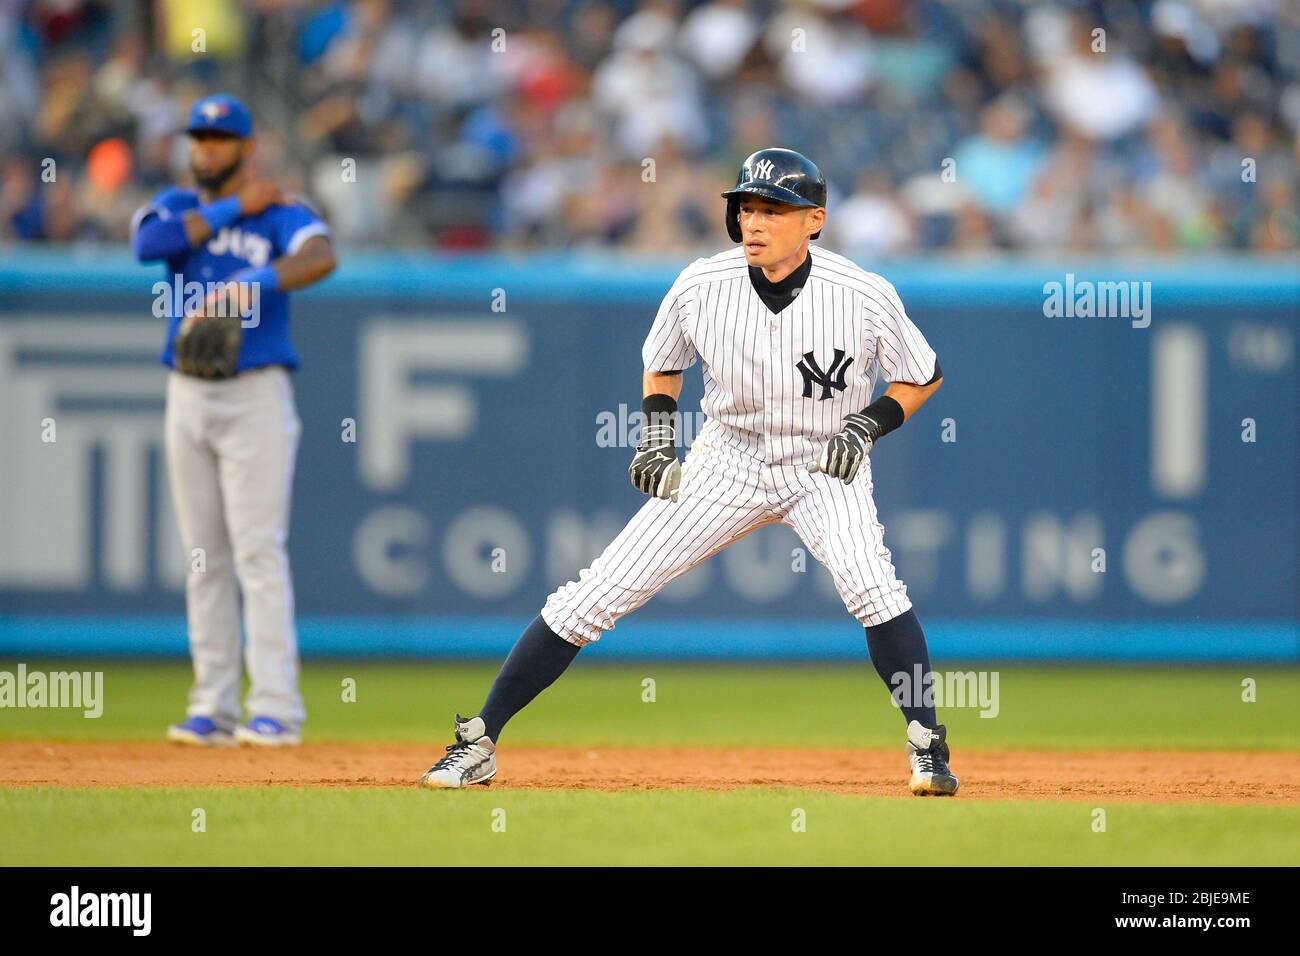 August 21, 2013: New York Yankees right fielder Ichiro Suzuki (31) reached 4000 career hits on Wednesday night at Yankee Stadium vs the Toronto Blue J Stock Photo